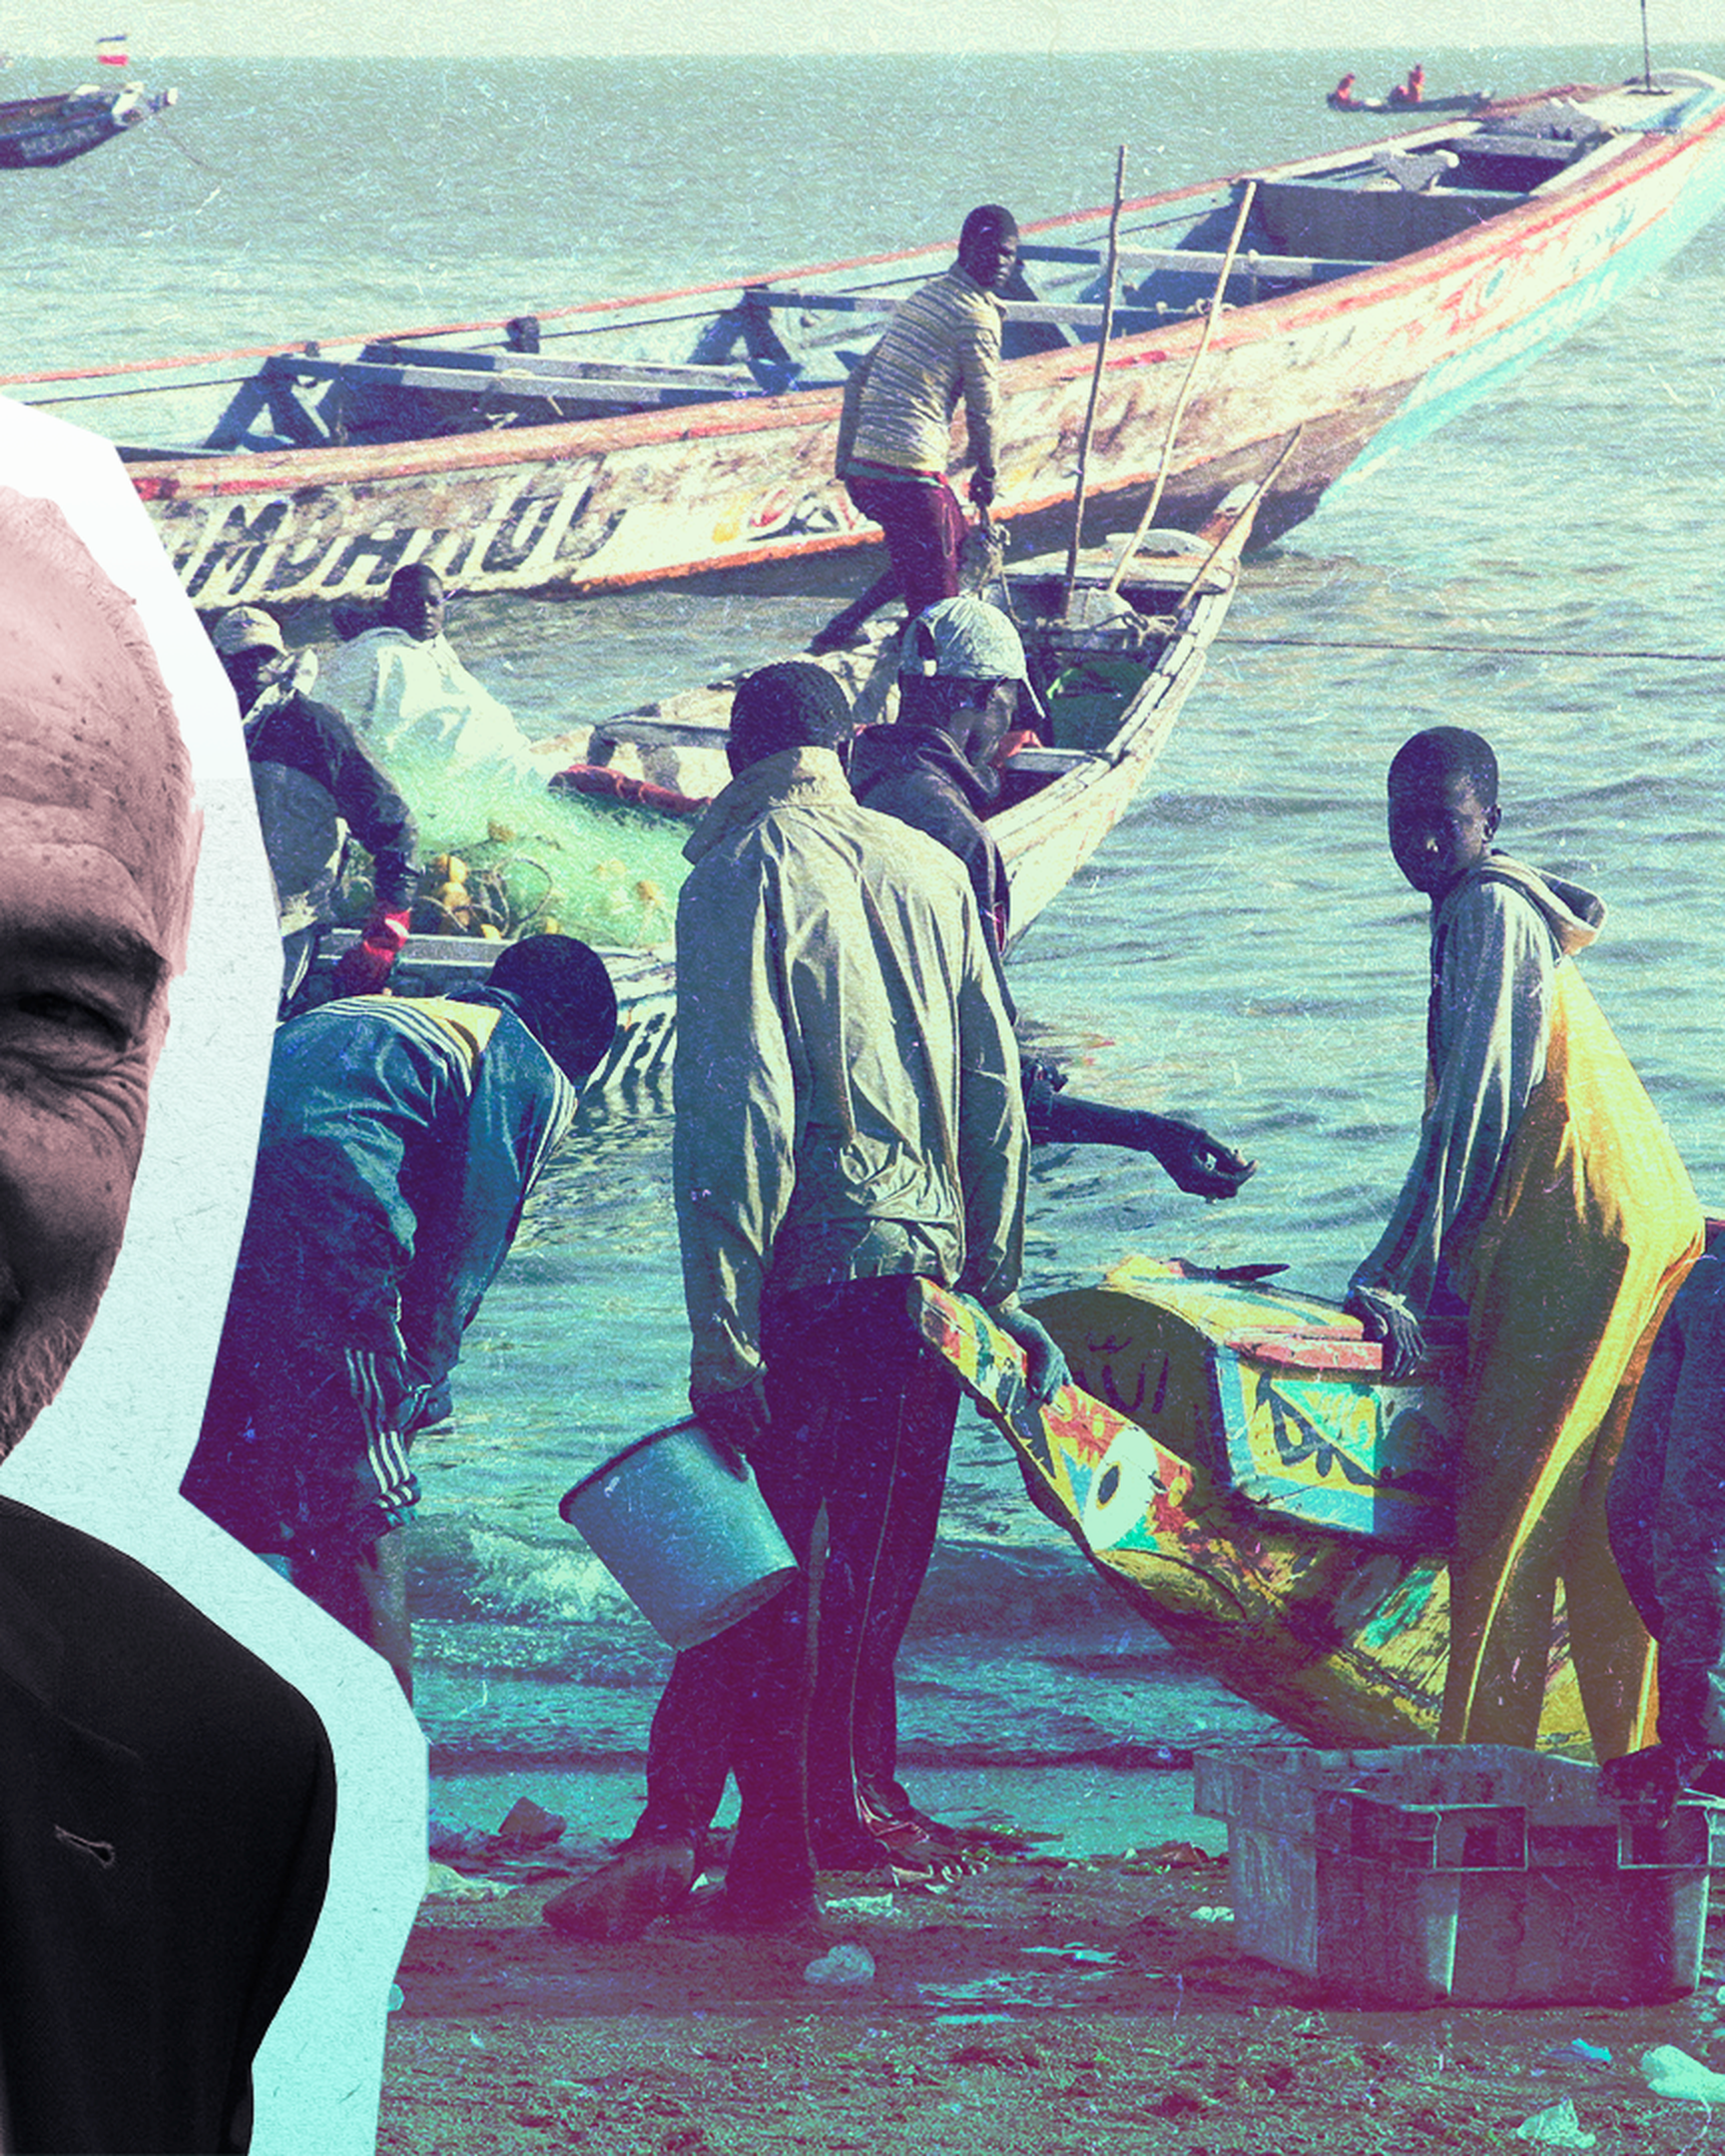 Die EU muss strenger gegen illegale Fischerei ankämpfen, um zu verhindern, dass den Menschen im Senegal weiter ihre Lebensgrundlage entnommen wird, warnt Gastautor Marcel Oberweis. 